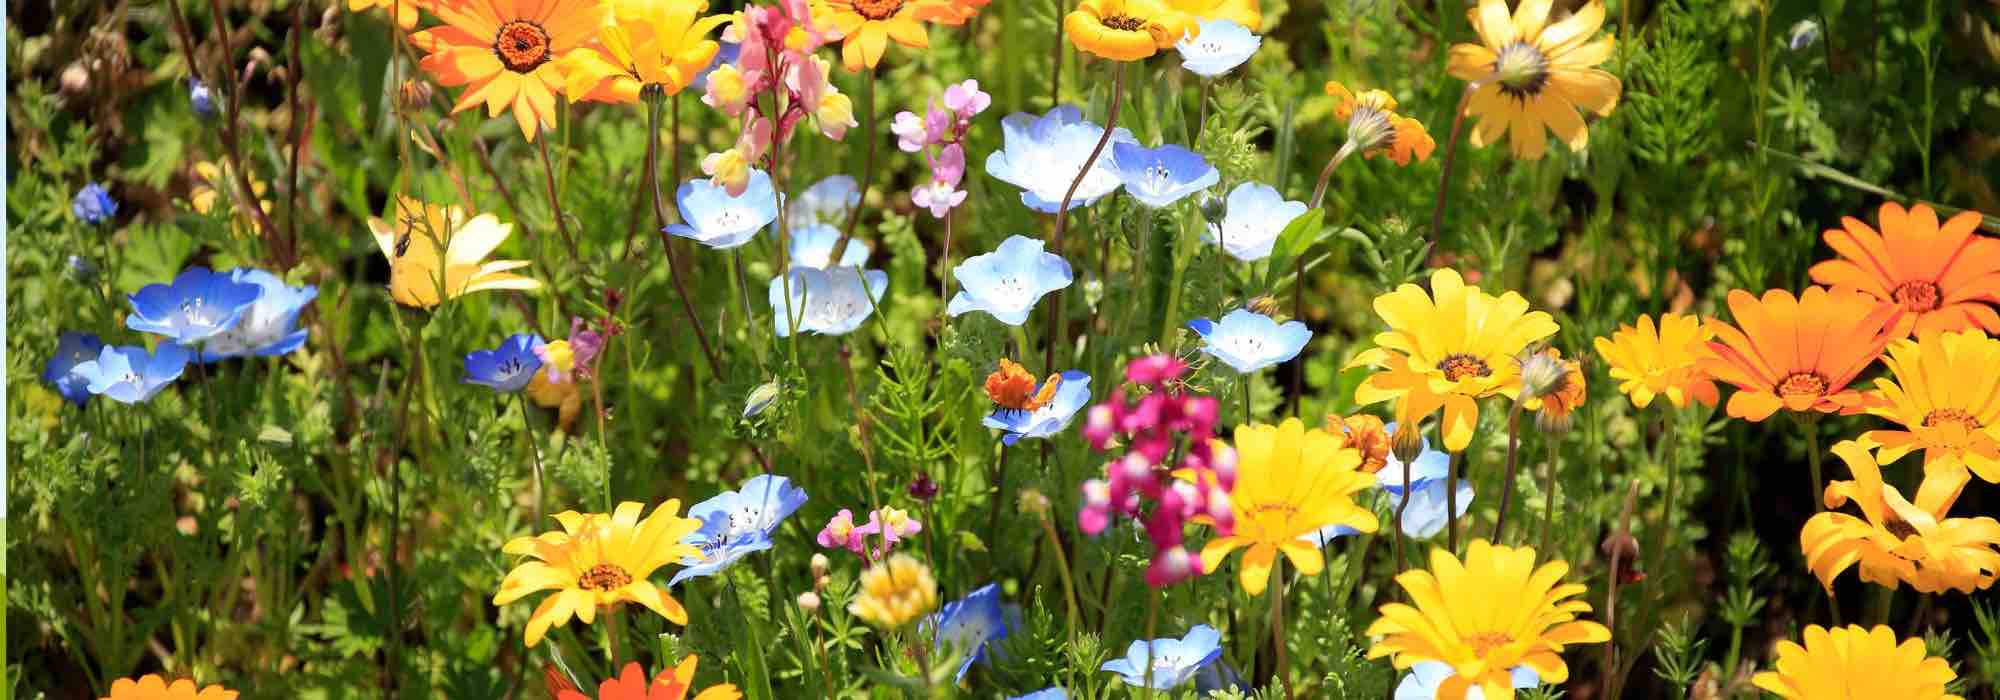 Et si vous aménagiez un jardin de fleurs coupées inspiré des fermes florales ?